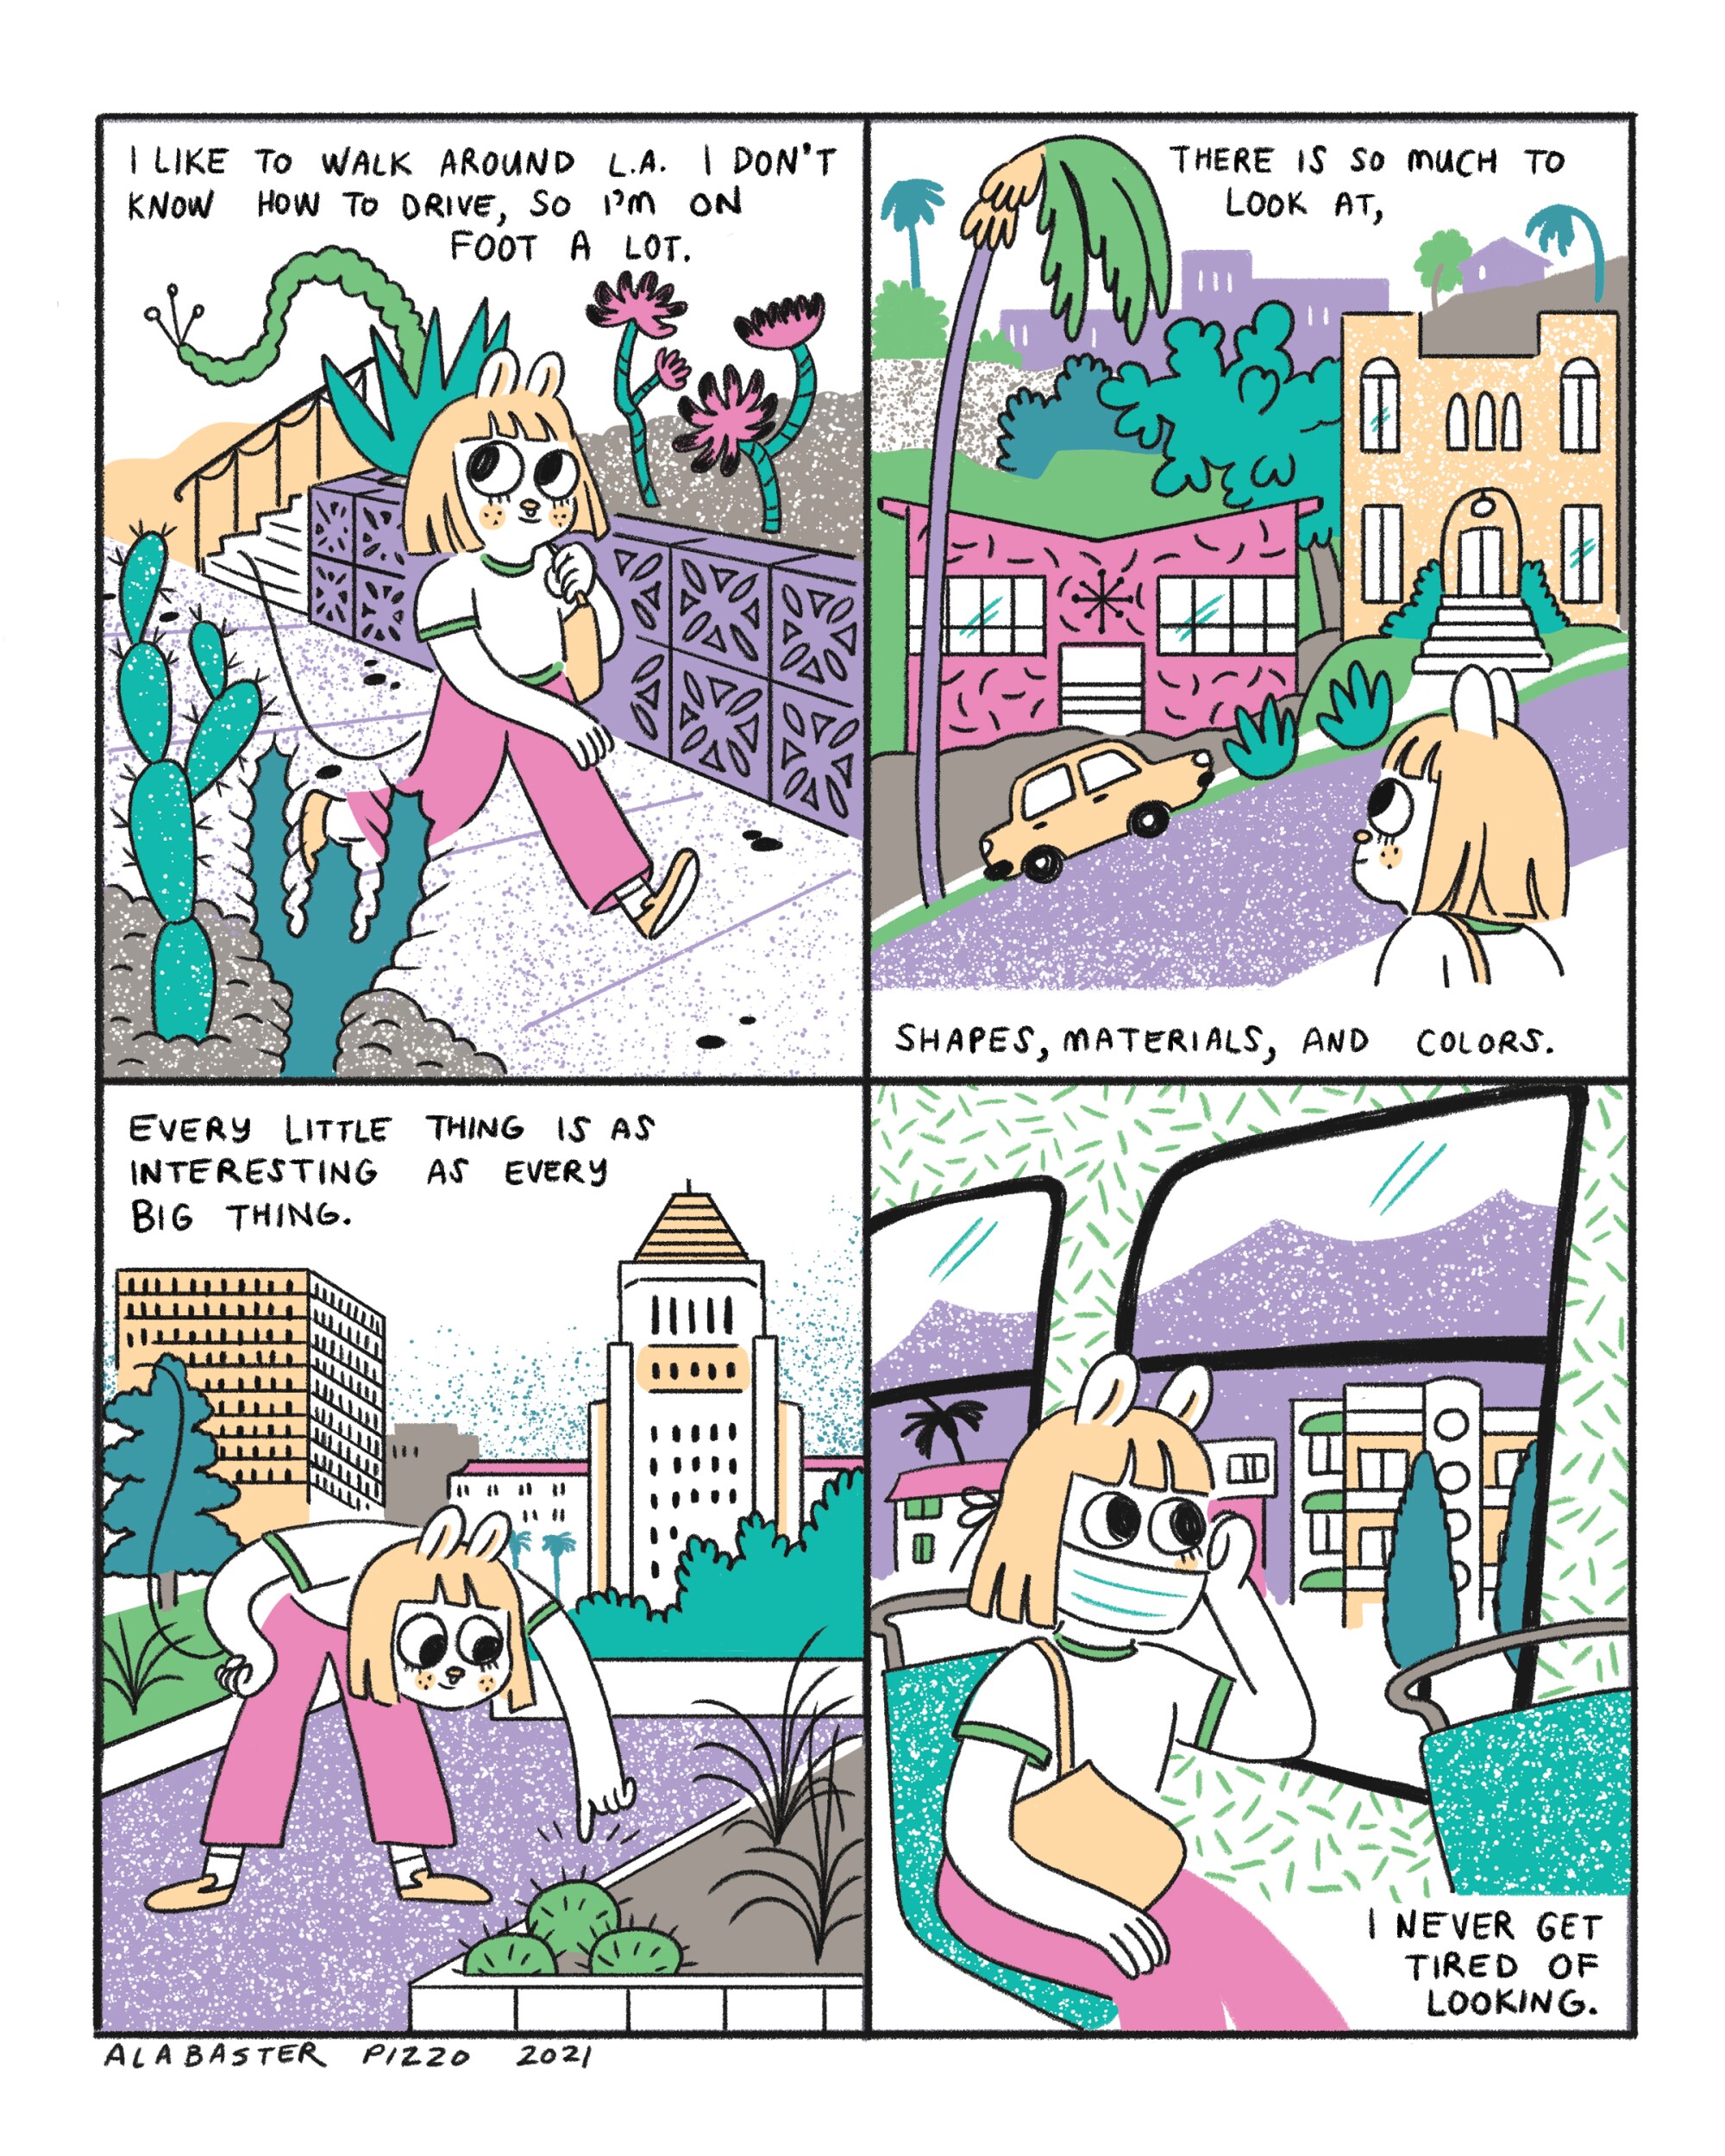 A história em quadrinhos de quatro painéis retrata uma mulher caminhando pela cidade.